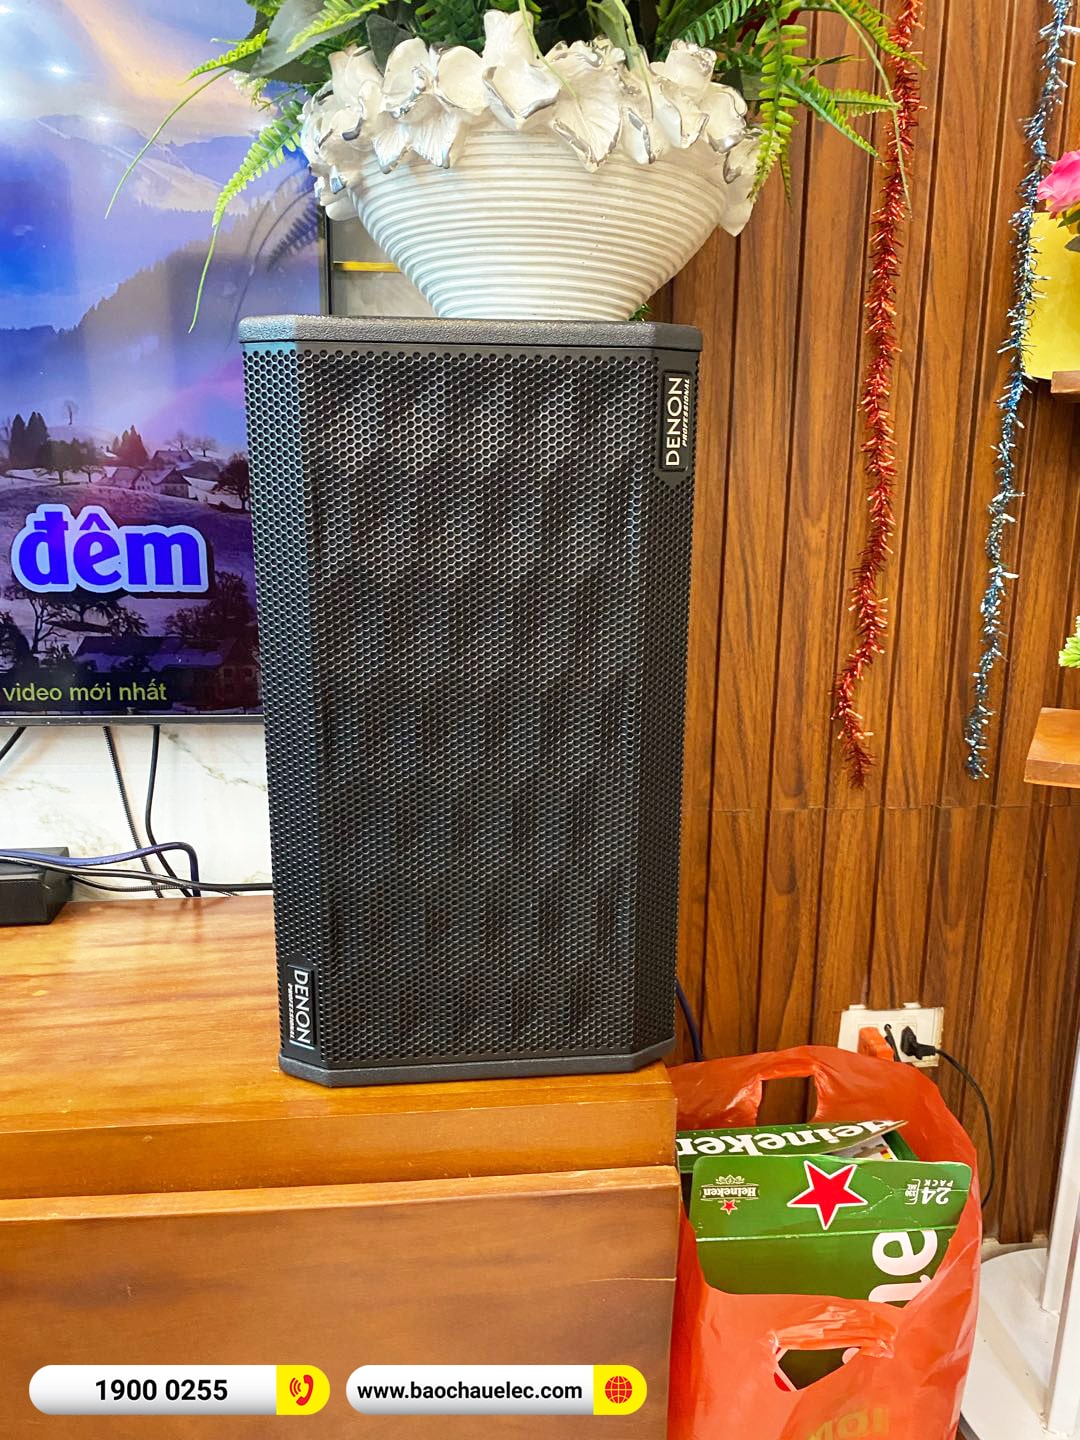 Lắp đặt dàn karaoke Denon hơn 26tr cho anh Xuân tại Thái Bình 